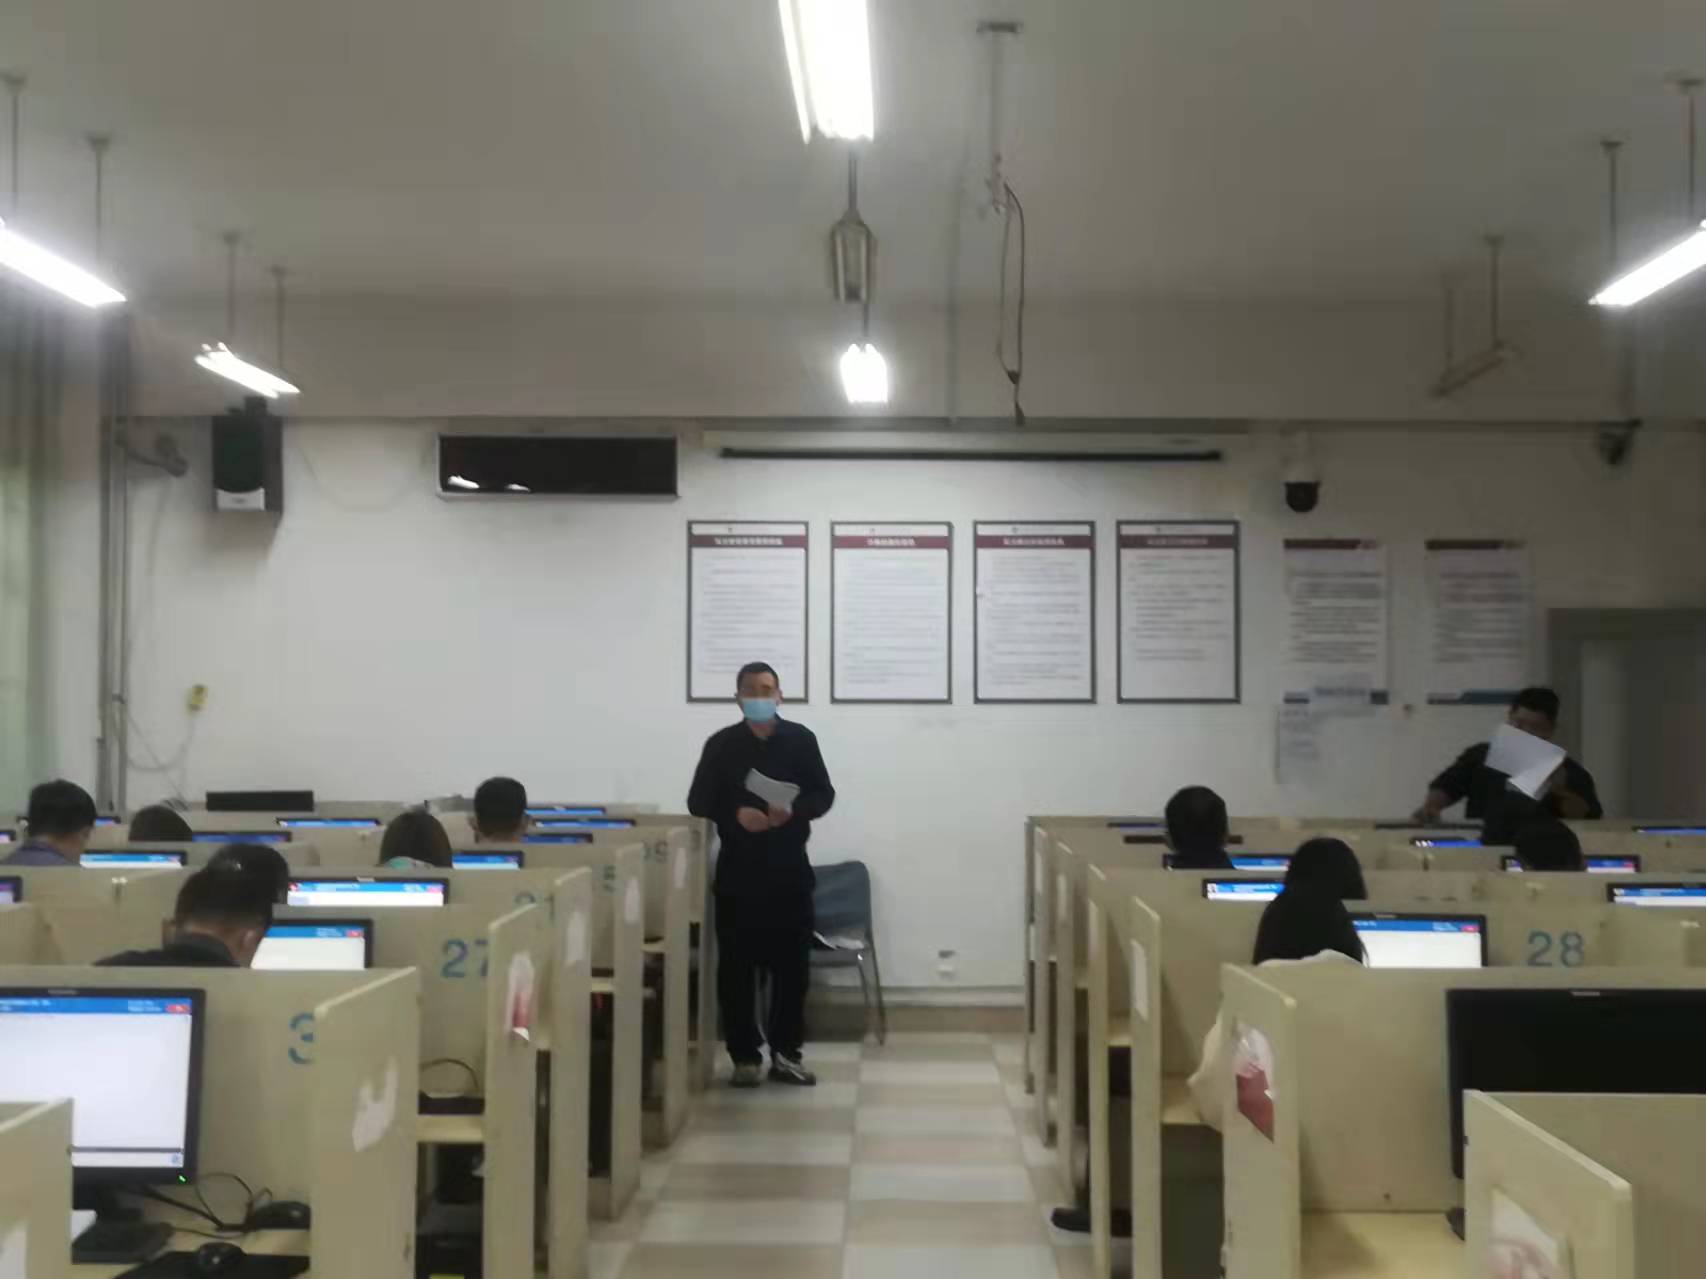 2022年初中级经济师考试在山东潍坊商业学校顺利举行